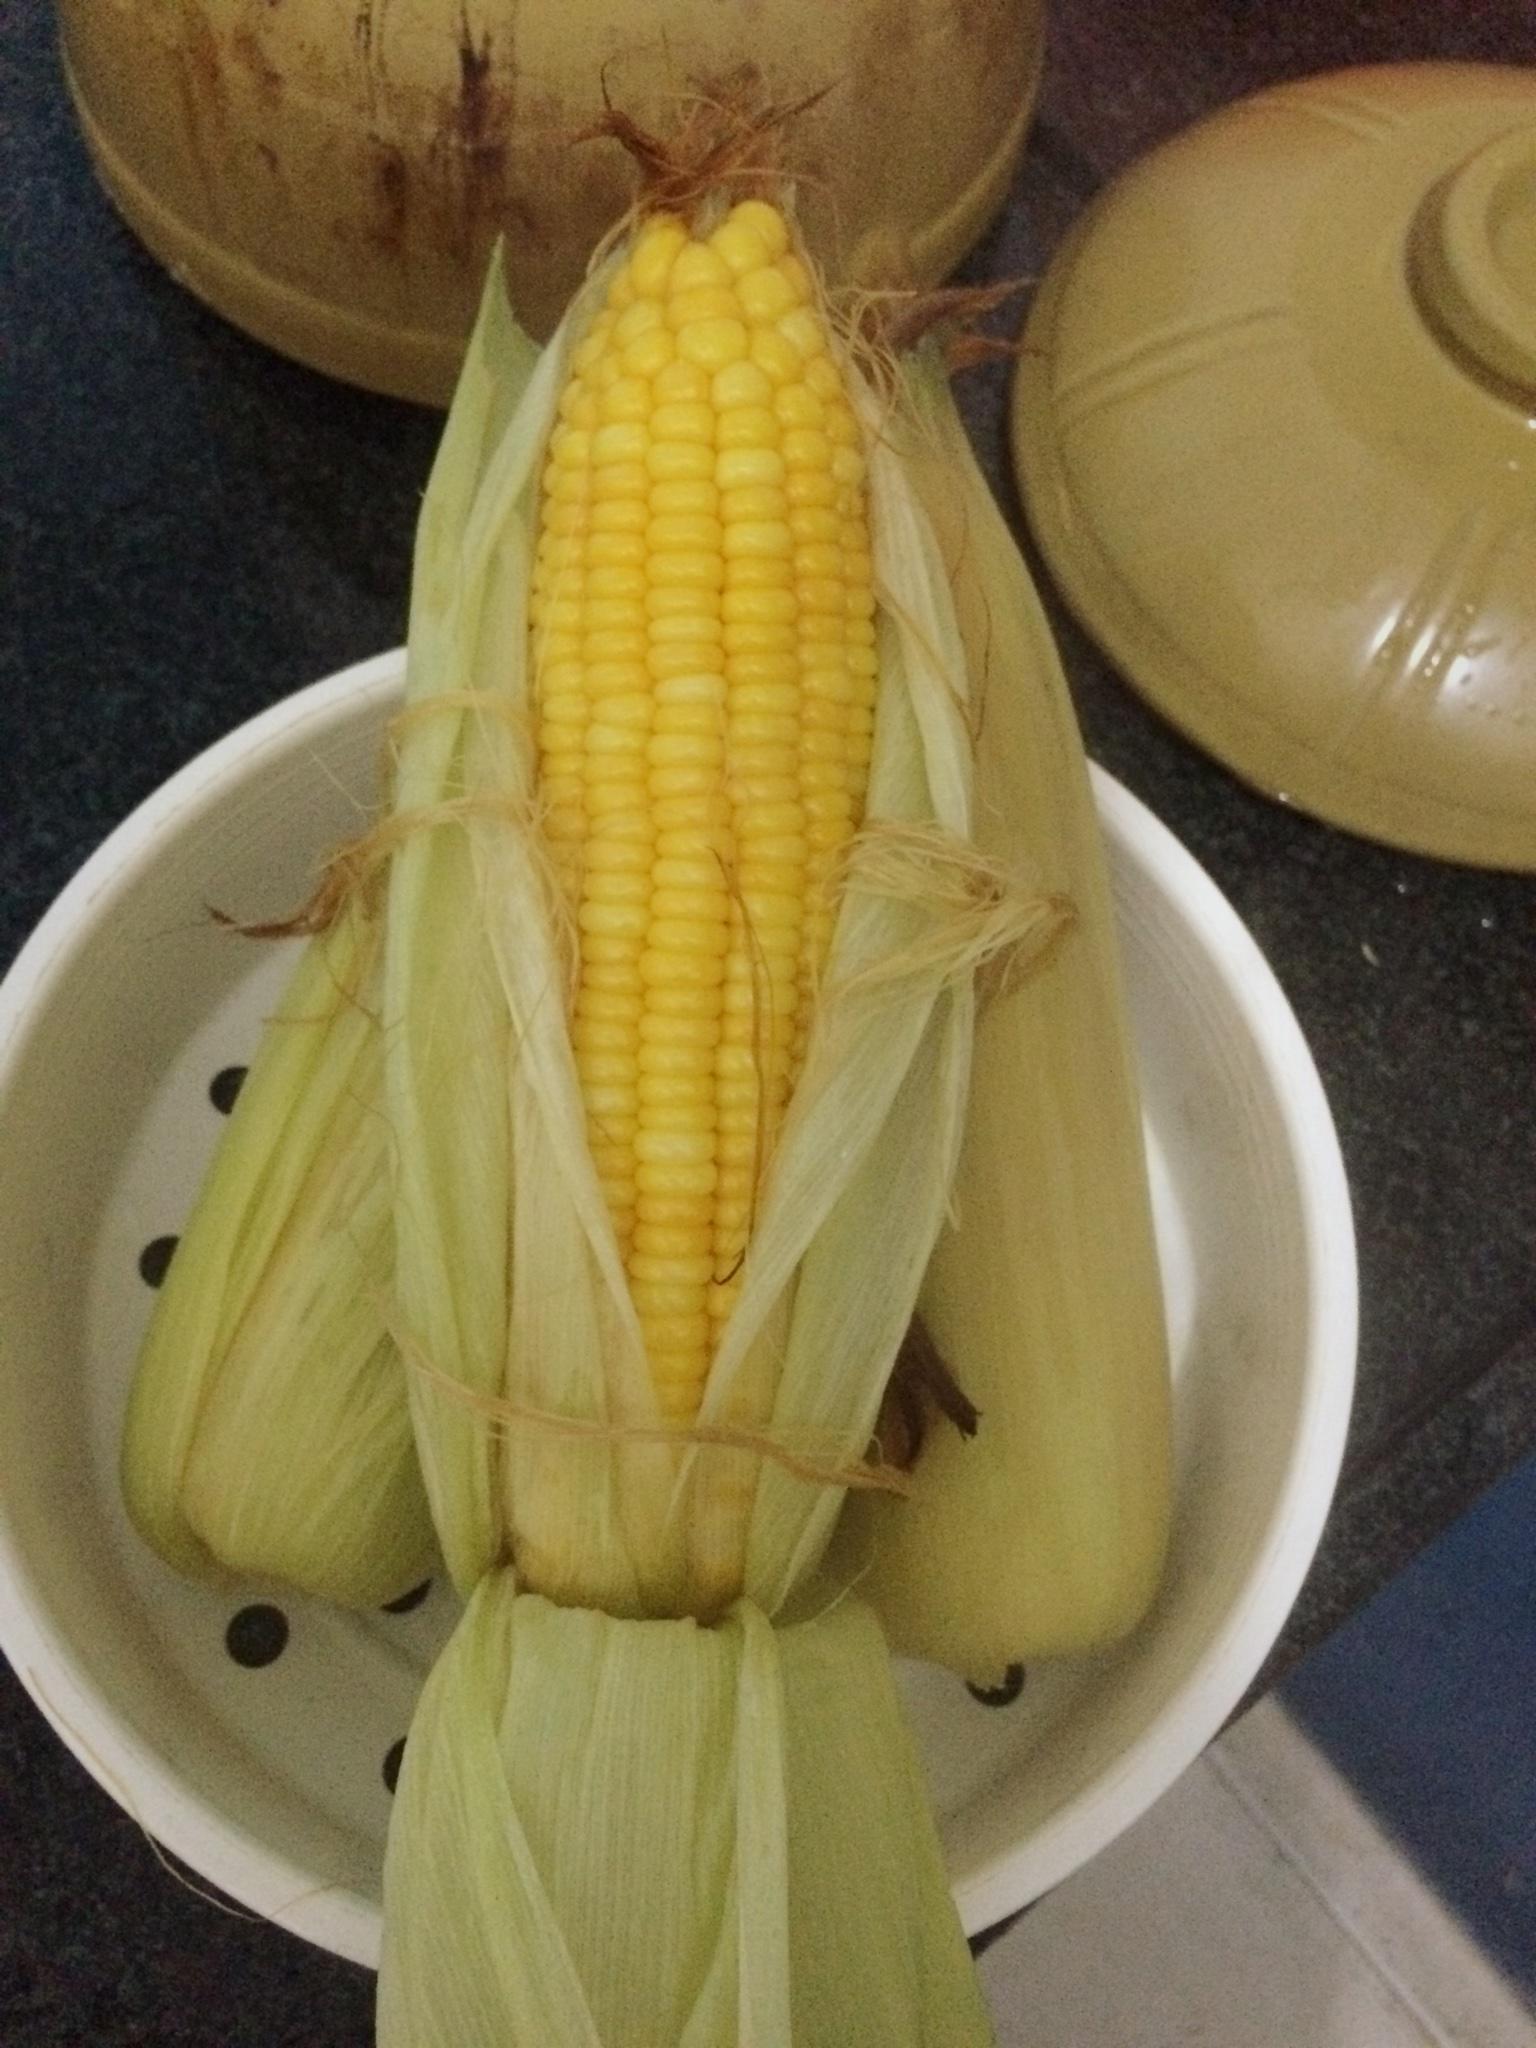 水煮玉米的做法